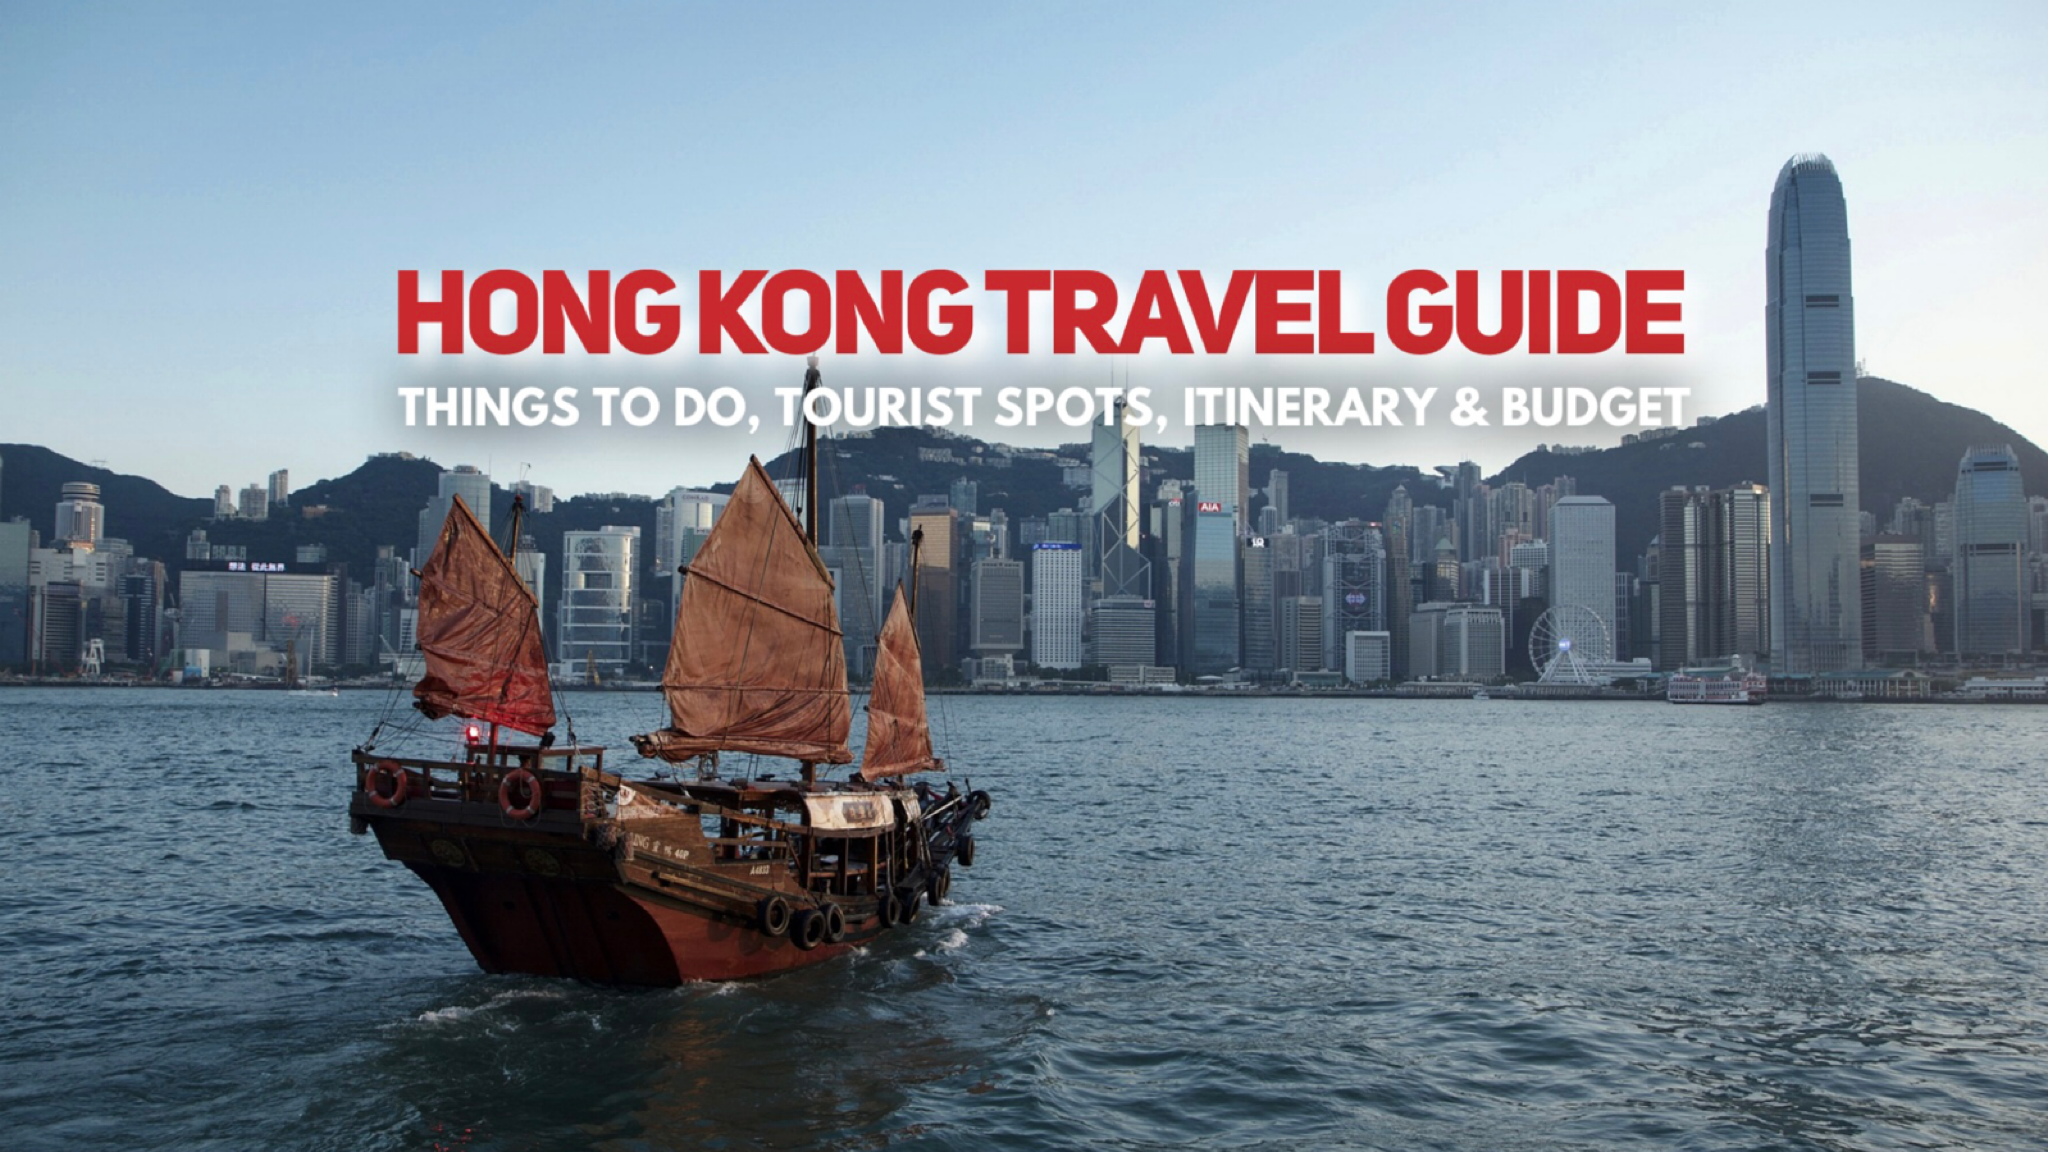 Travel to Hong Kong!